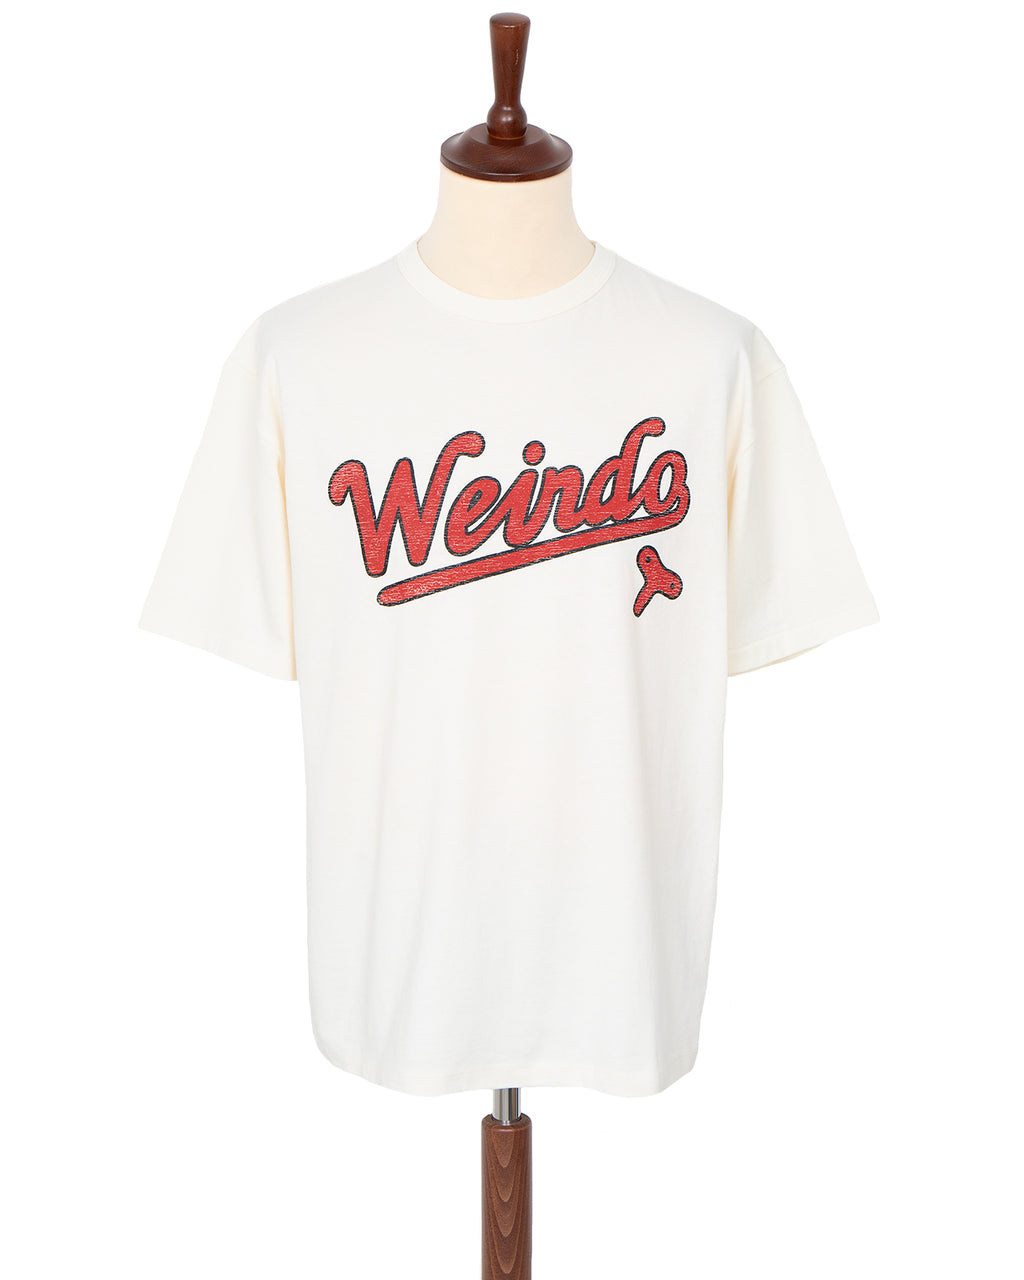 Weirdo Wind Up T-Shirt, White